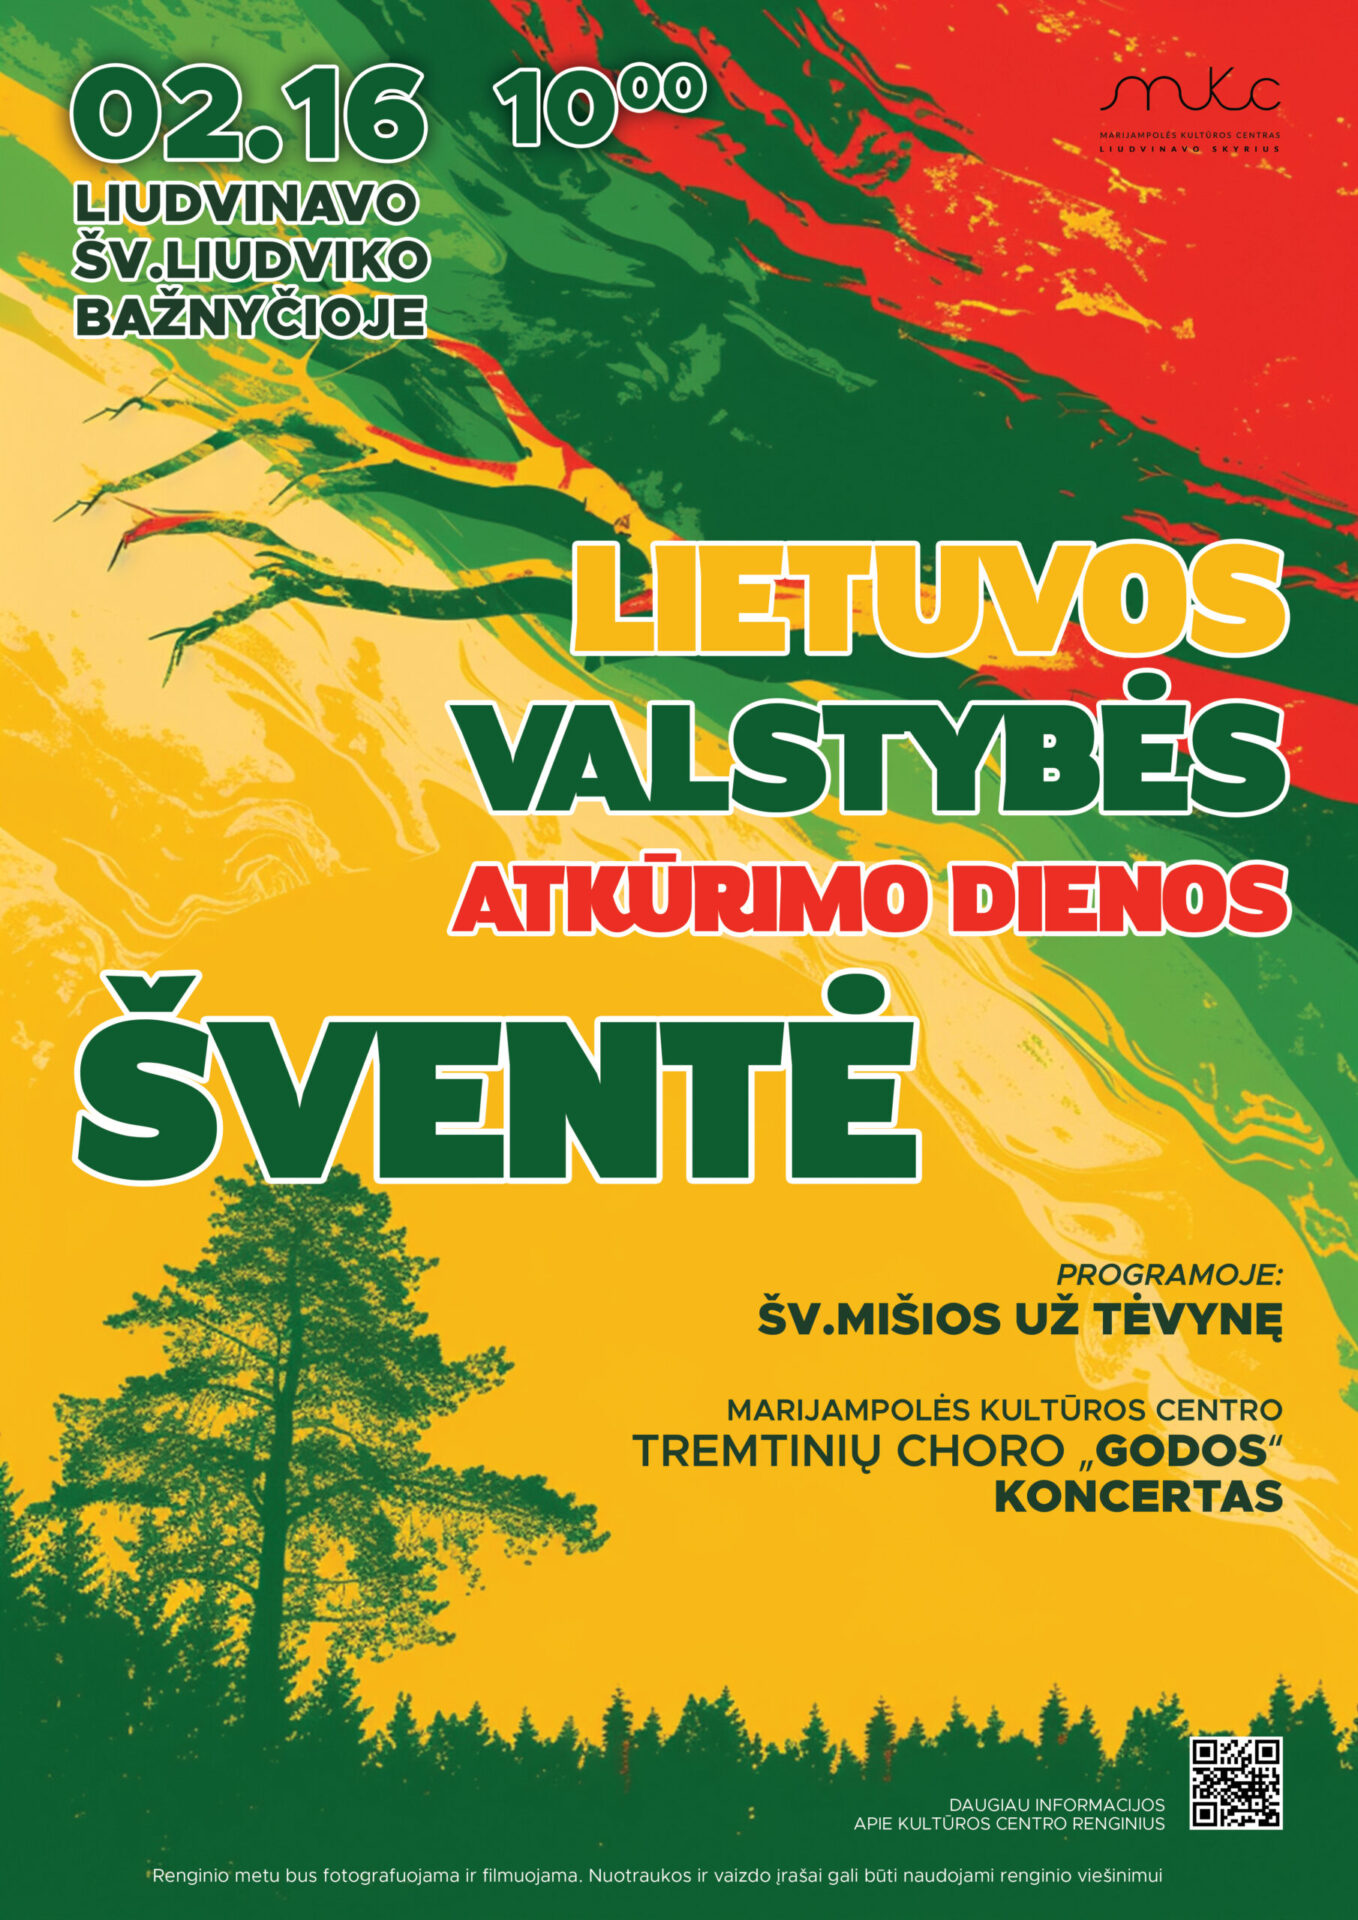 Lietuvos valstybės atkūrimo dienos šventė | LIUDVINAVAS